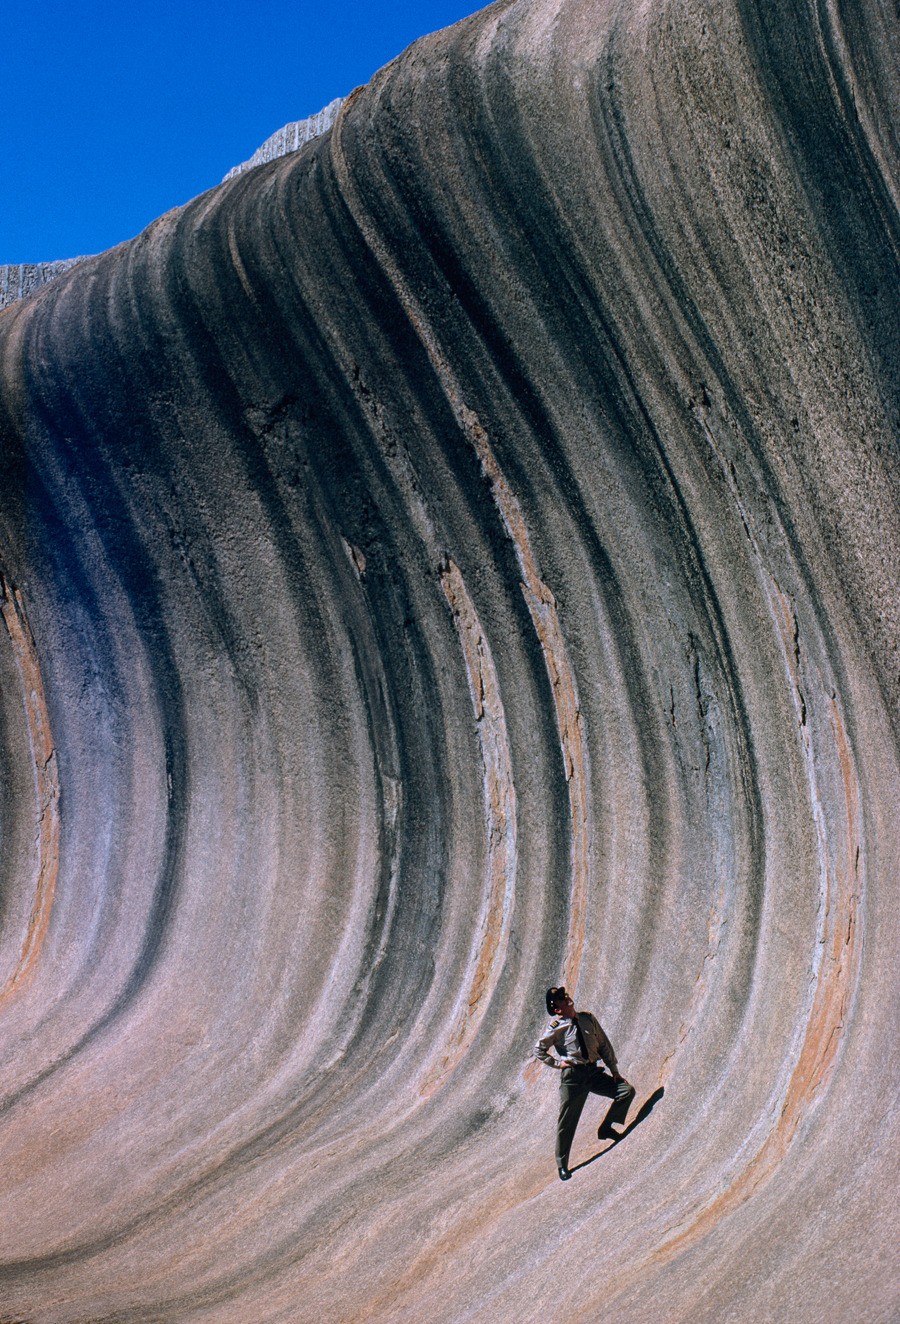 Скала в виде волны над равниной в Западной Австралии, 1963. Фотограф Роберт Б. Гудман